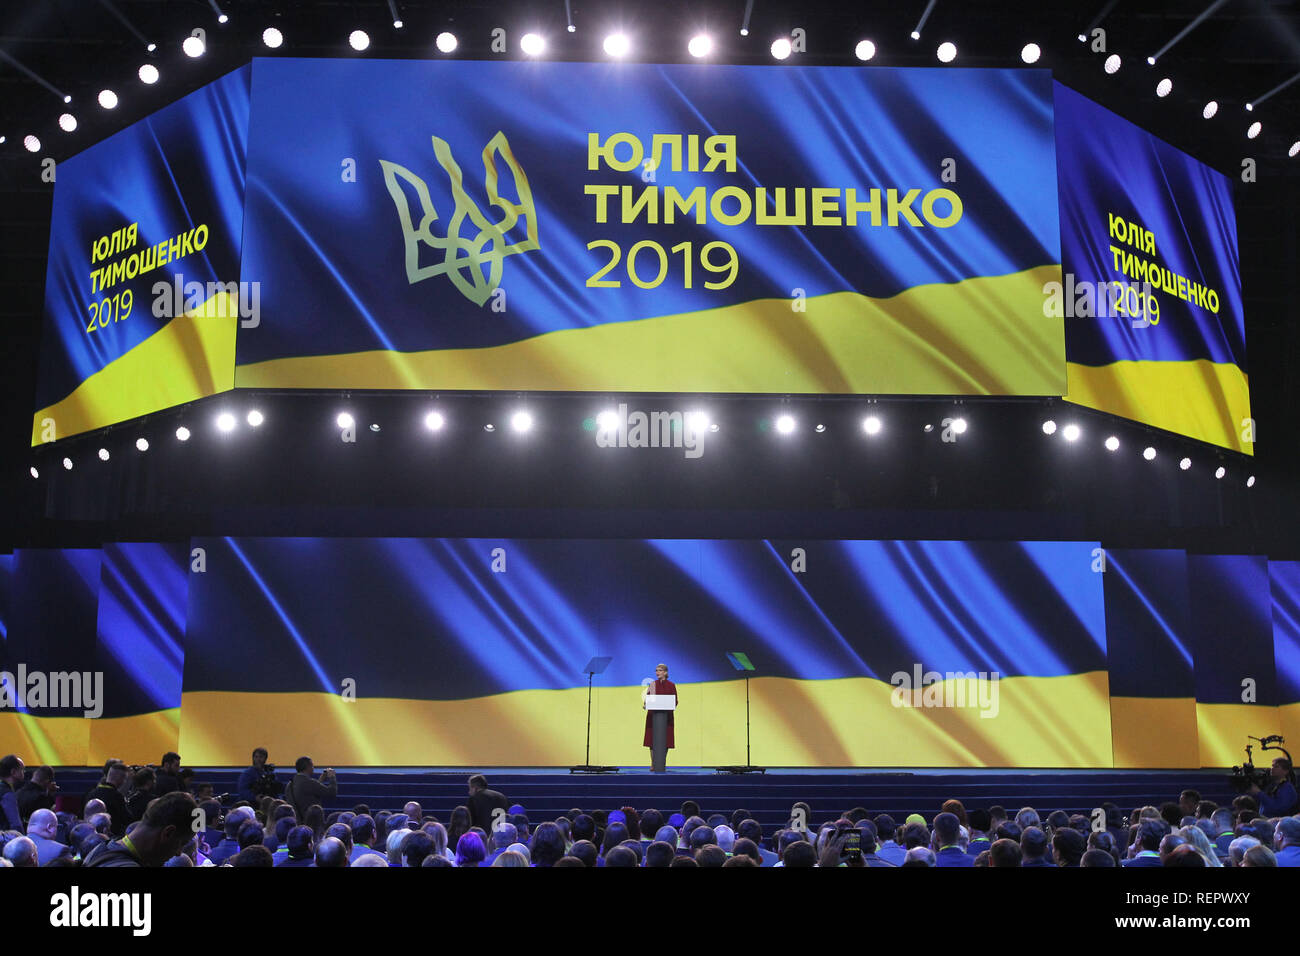 Candidat à l'élection présidentielle ukrainienne Ioulia Timochenko vu parler pendant l'événement à Kiev. Timochenko a été nommé par le congrès du parti comme candidat pour les élections présidentielles le 31 mars. Banque D'Images